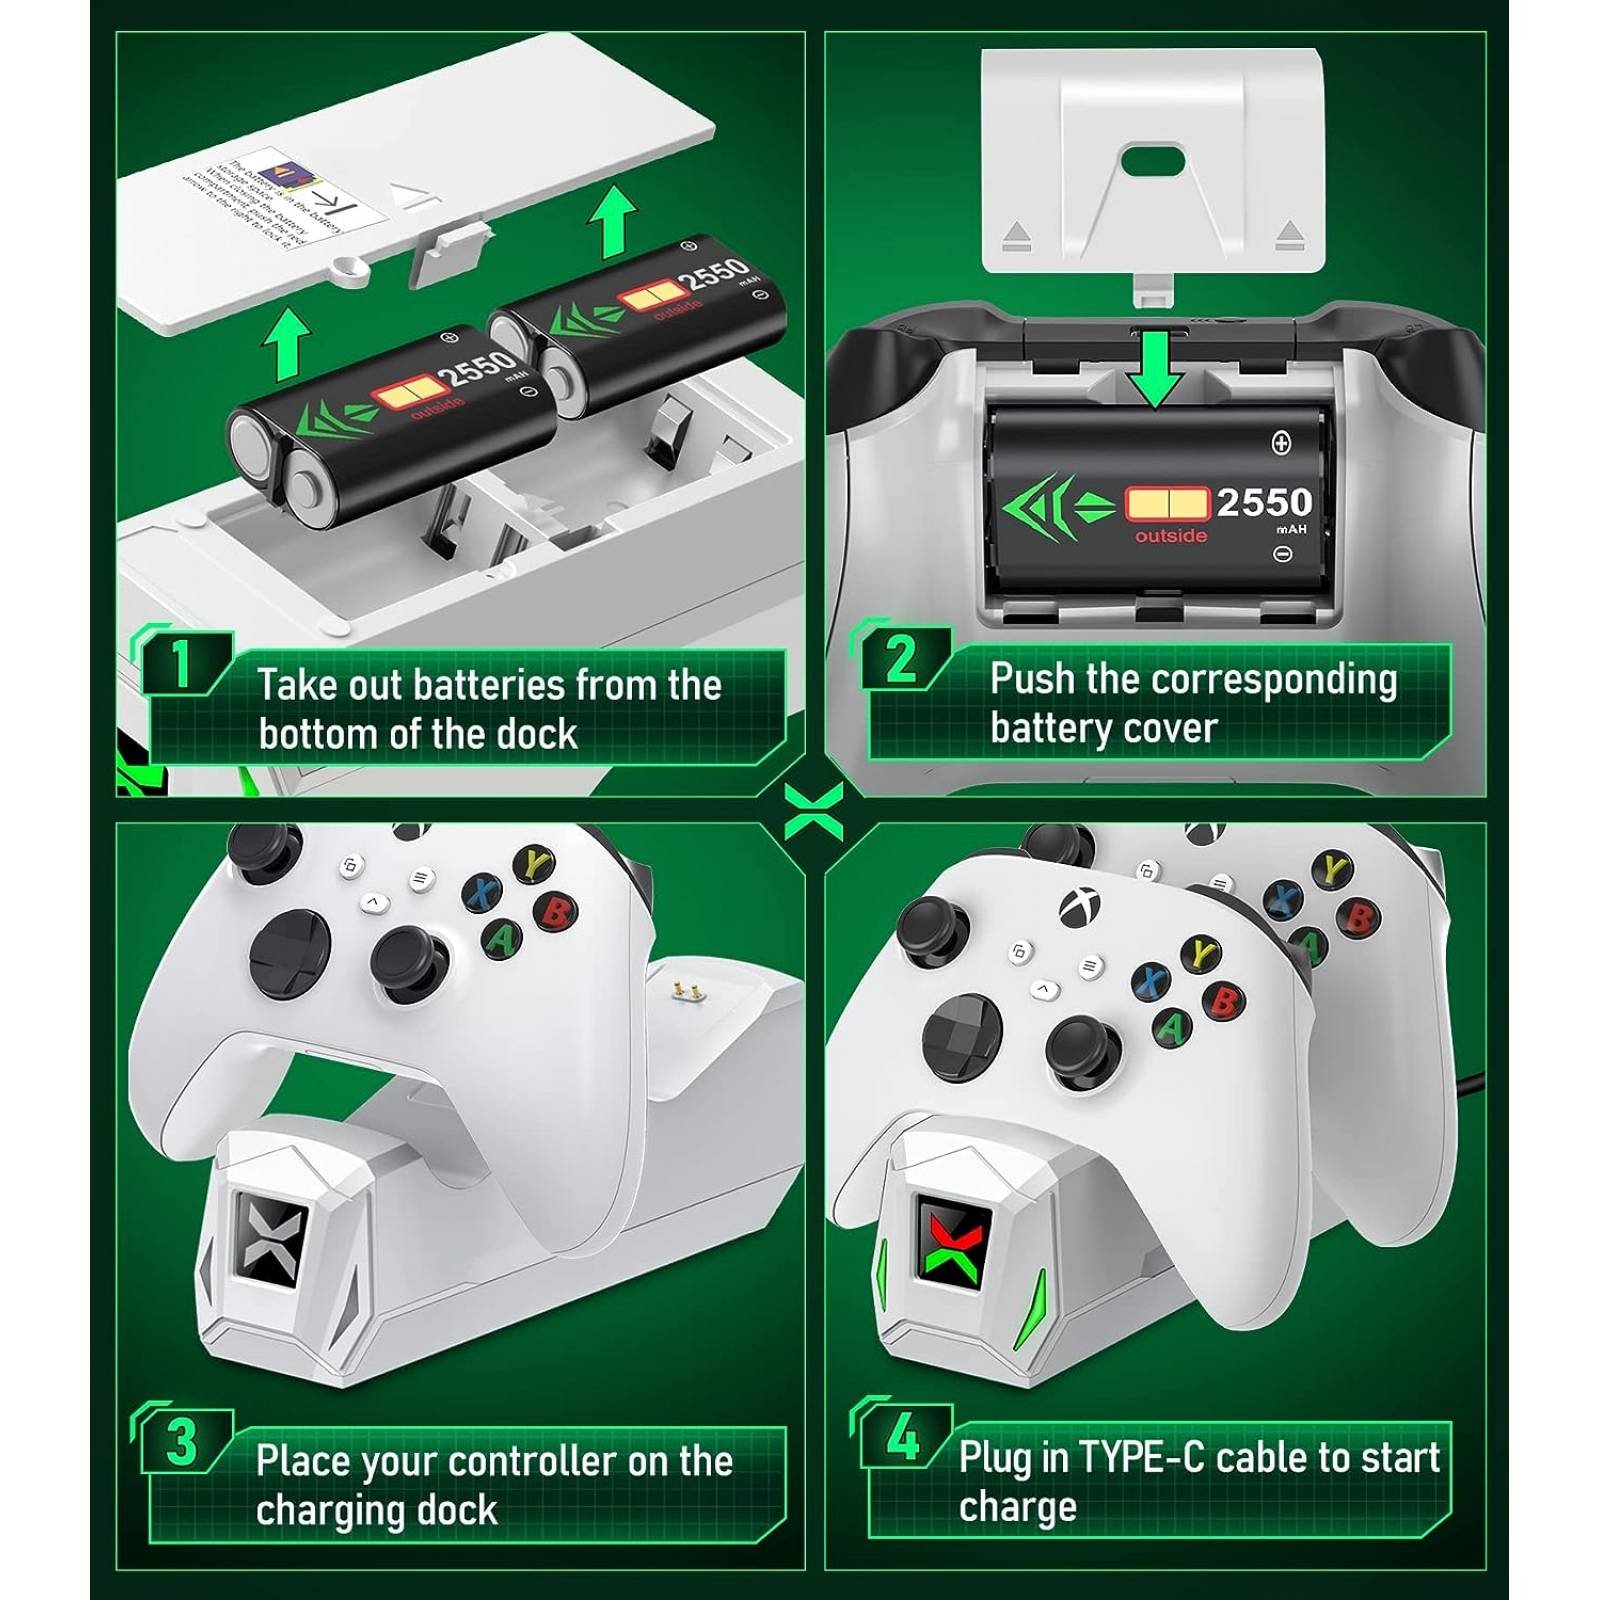 Paquete de baterías recargables para controladores – 2 x 2550 mAH Paquete  de baterías Xbox para Xbox One/Series X/S, Xbox One S/X/Elite, paquete de